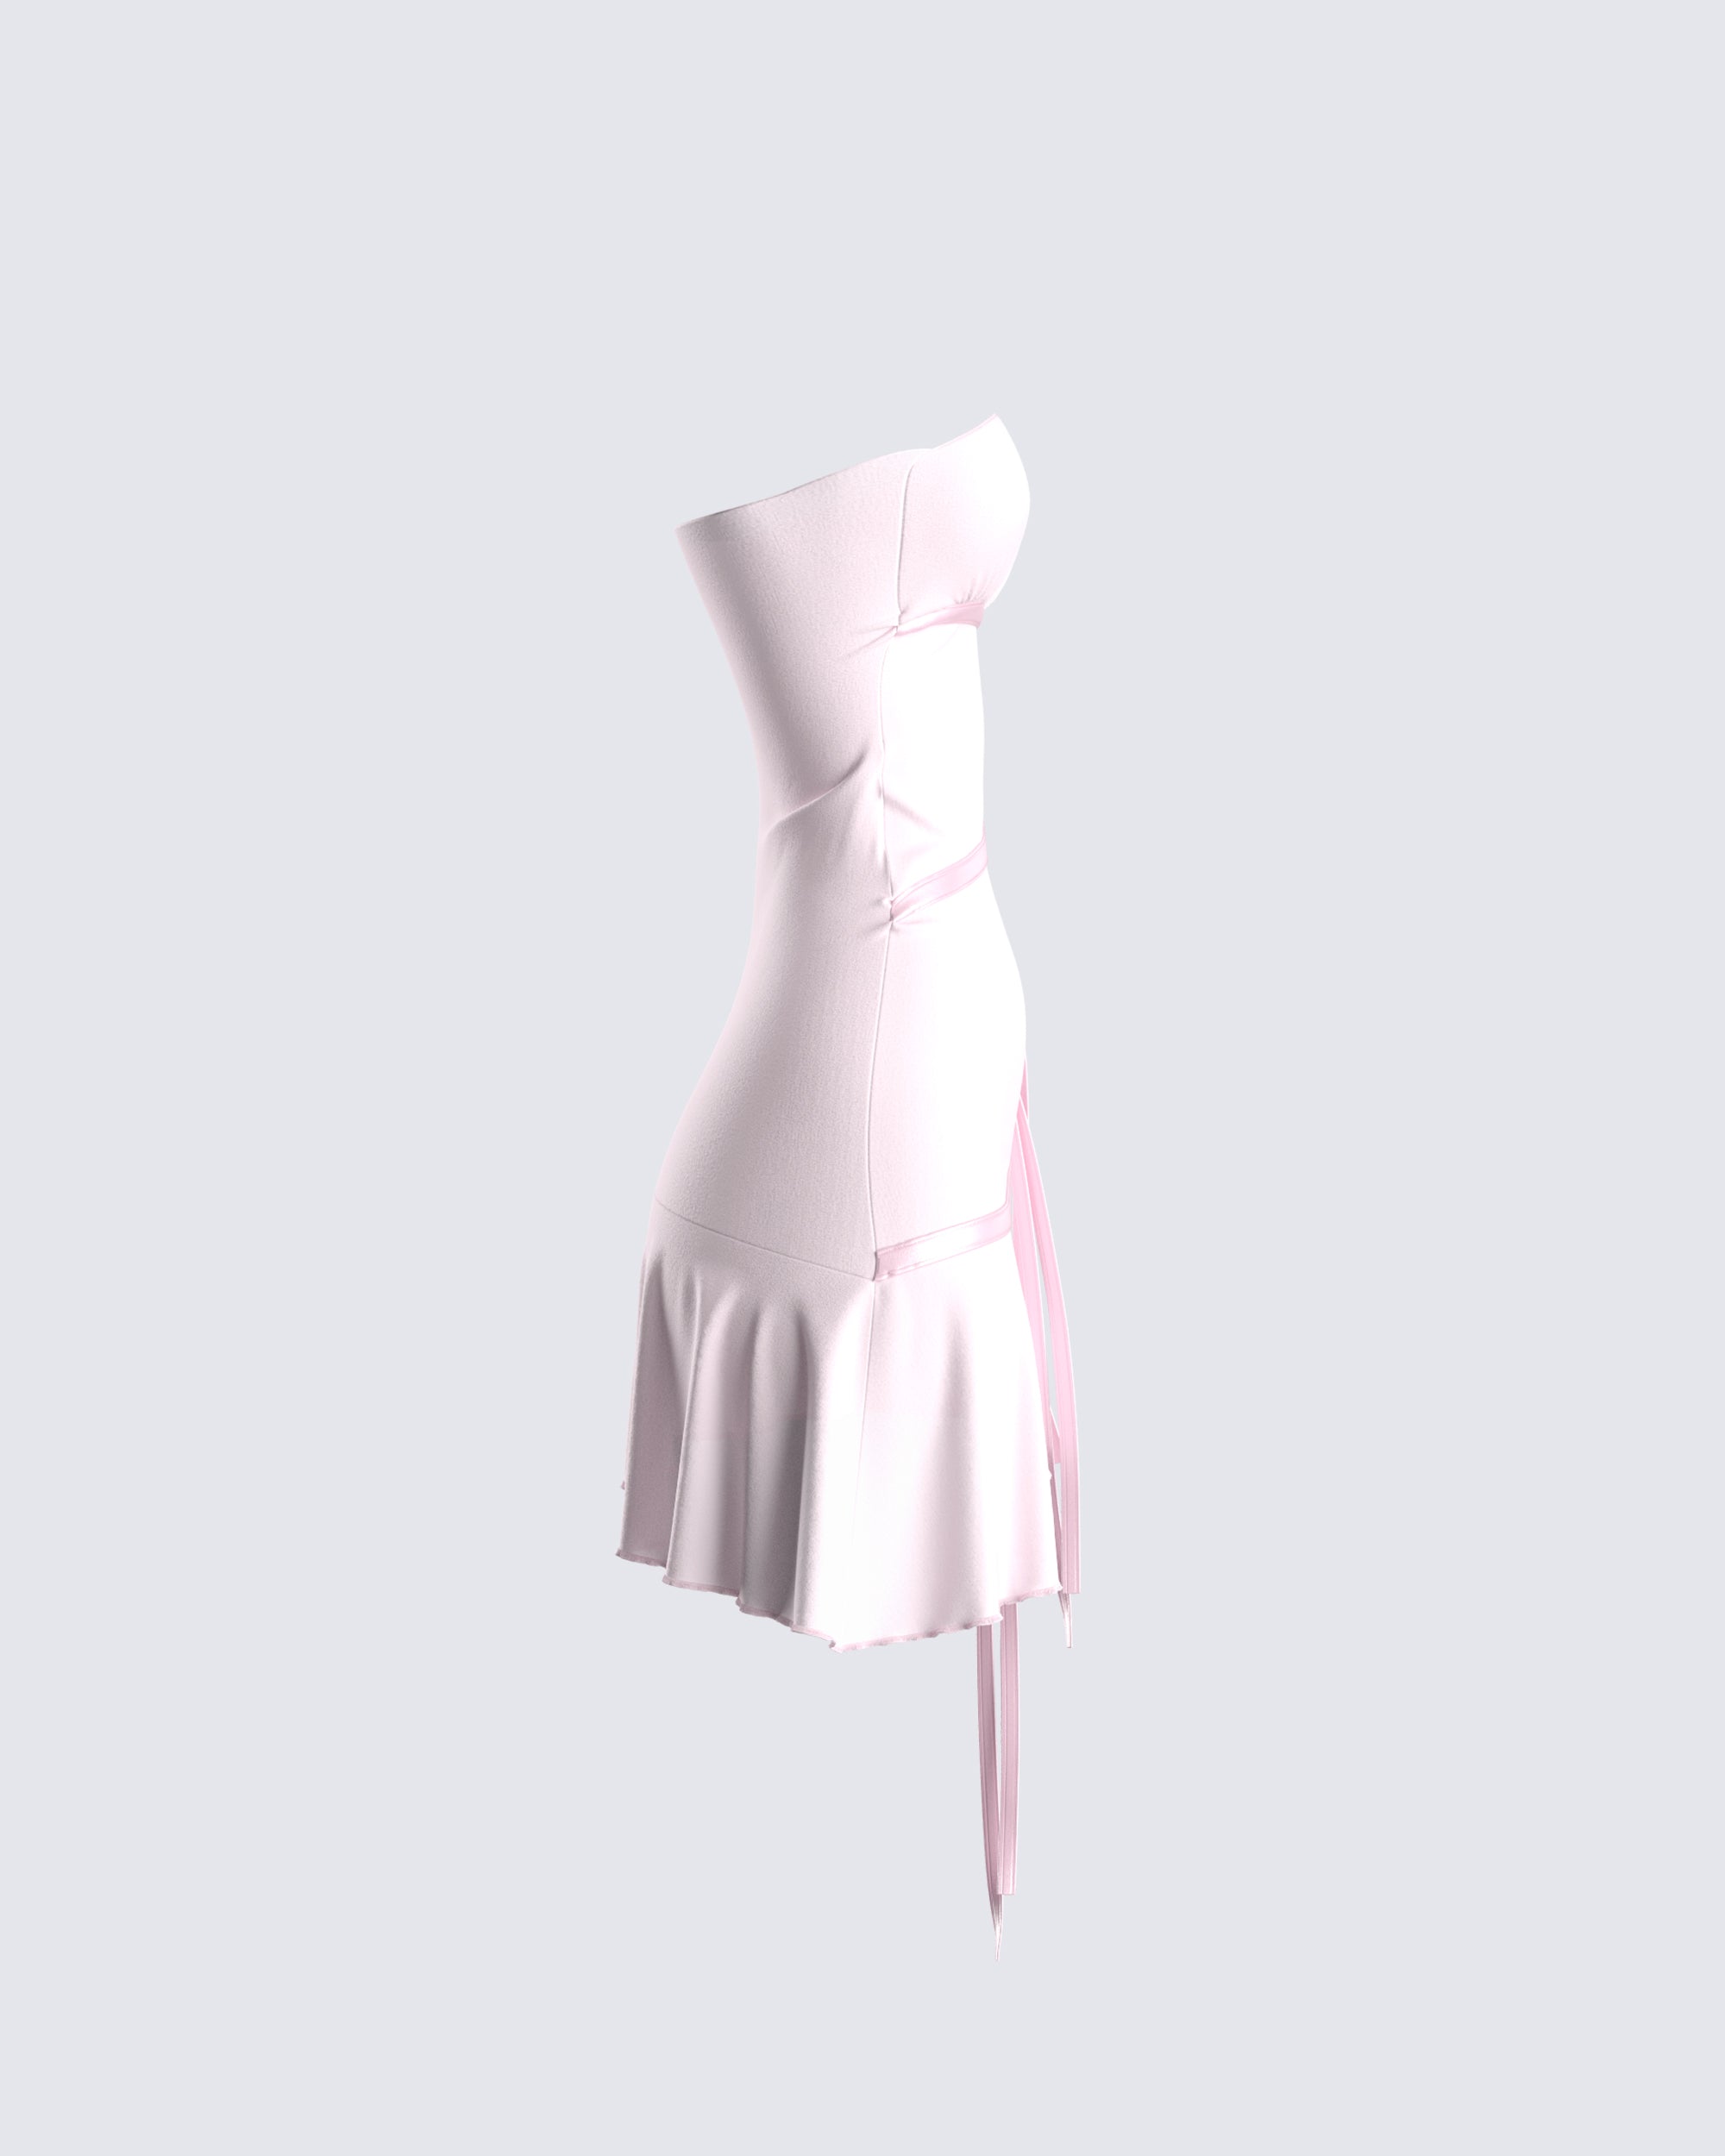 Siola striped tie-fastening dress - Pink